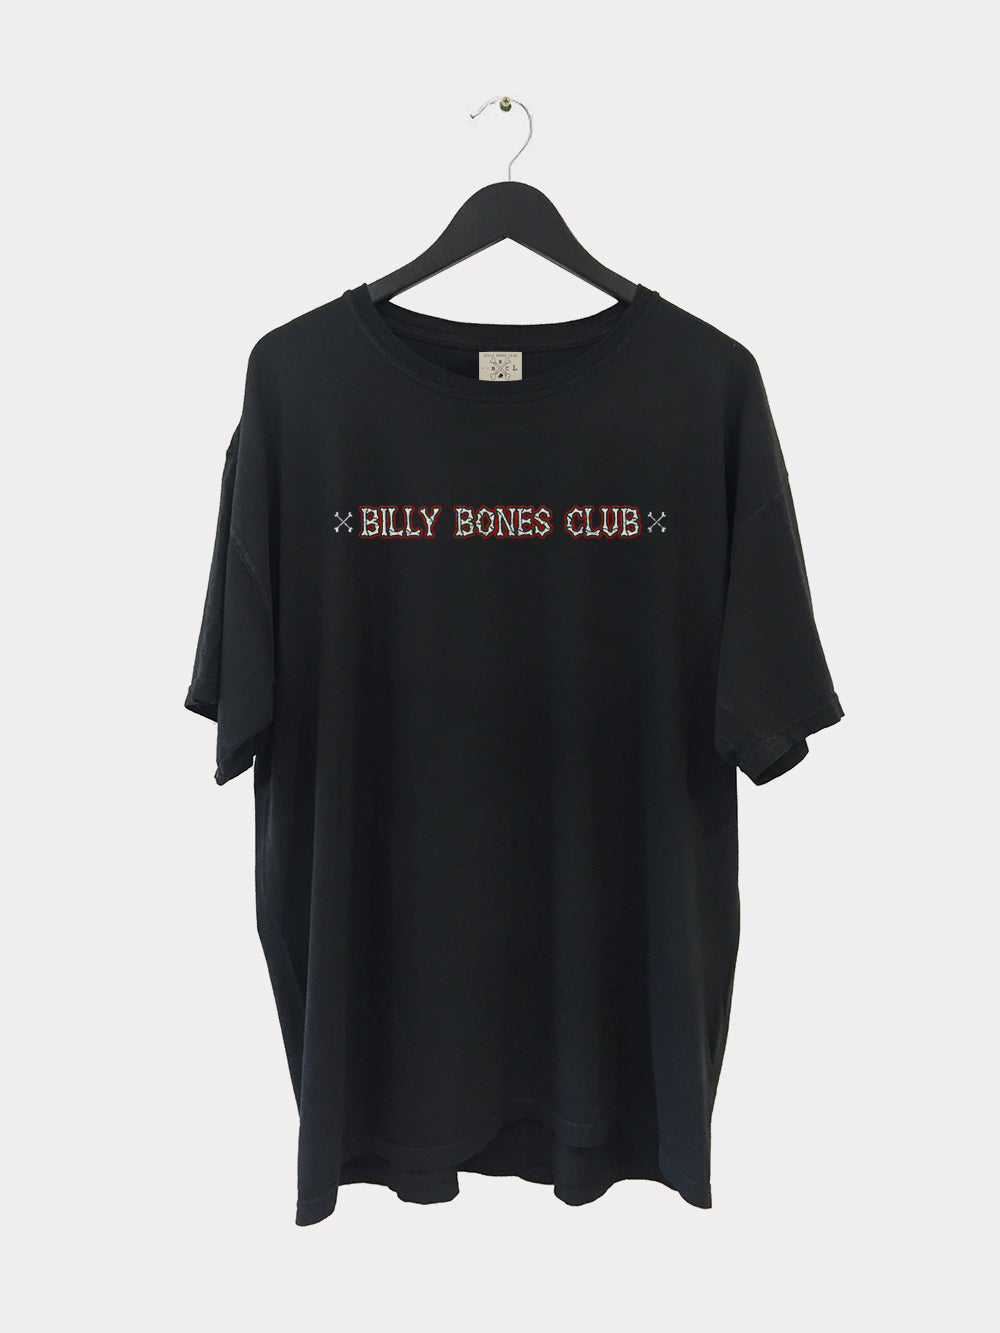 Billy Bones Club X Tee - Vintage Black